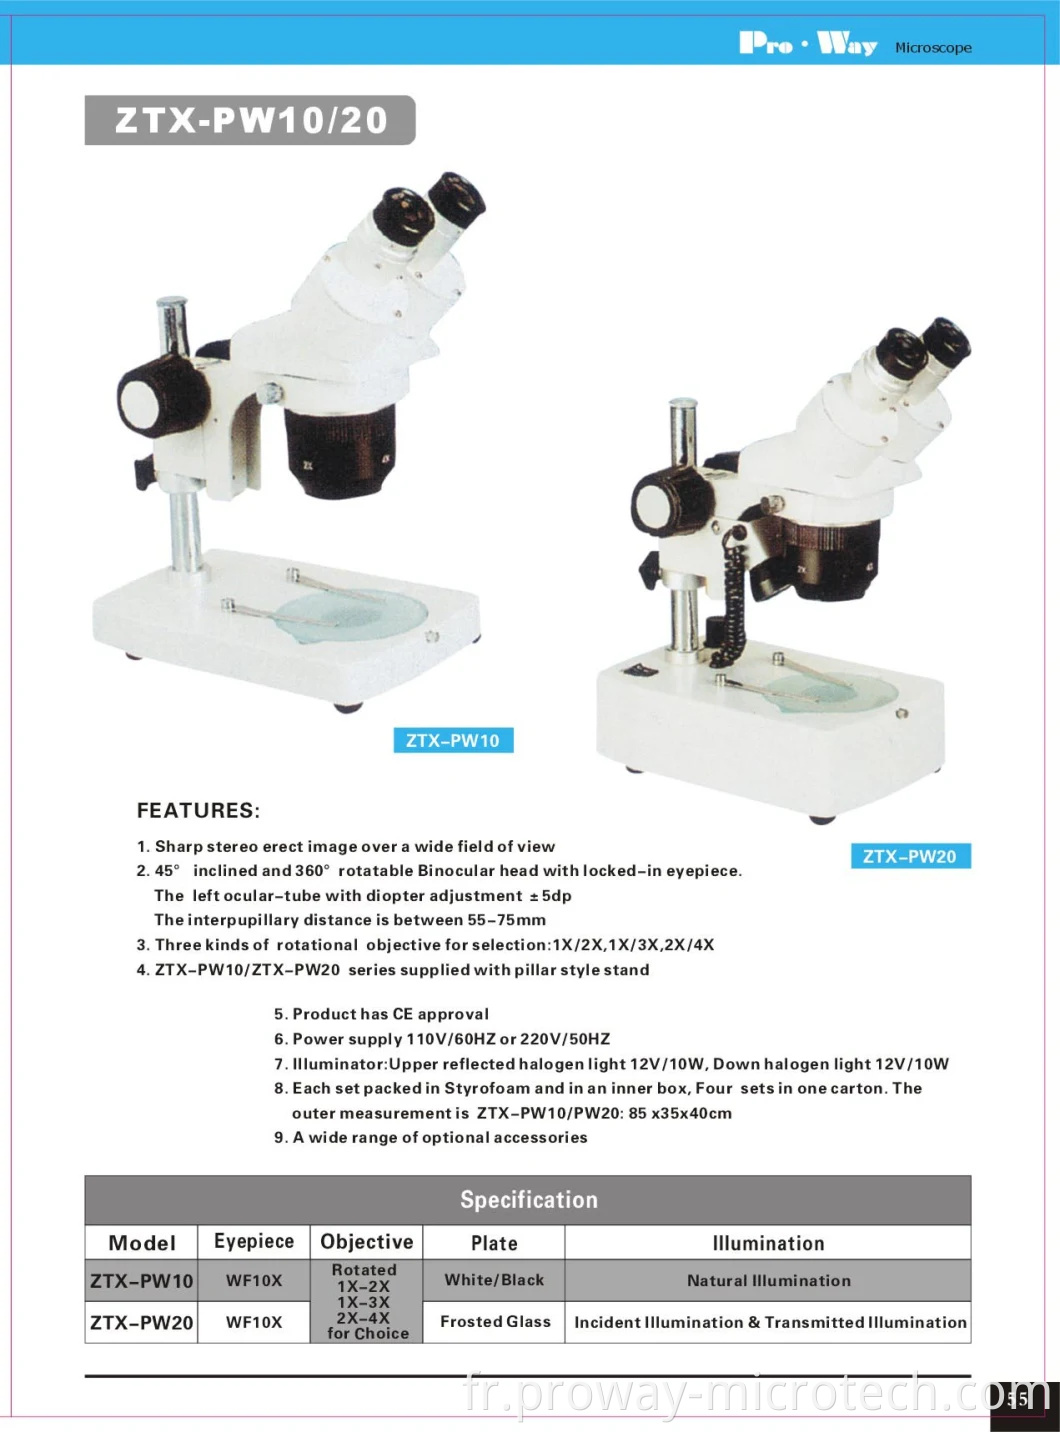 Microscope stéréo (ZTX-PW20)